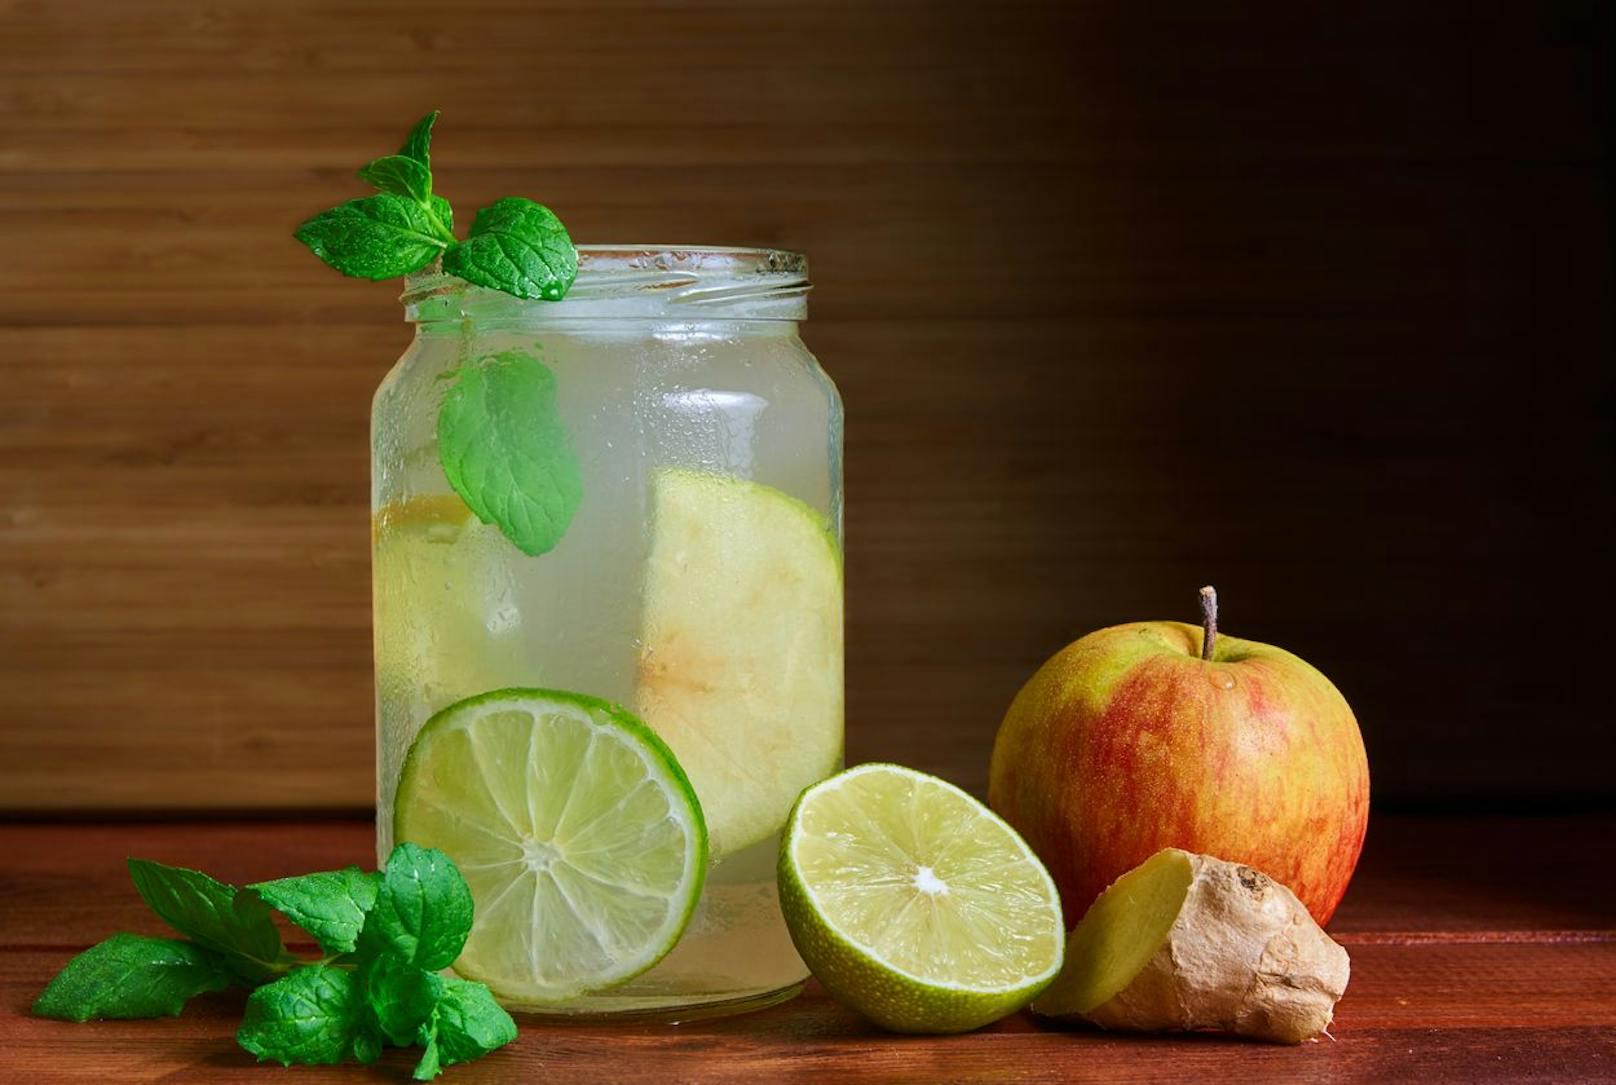 Das Trendgetränk Switchel enthält Apfelessig, Zitronensaft, Honig, Wasser und die Zauber-Zutat Ingwer. Dieser Drink verpasst dir einen richtigen Kick und regt außerdem deinen Stoffwechsel an.